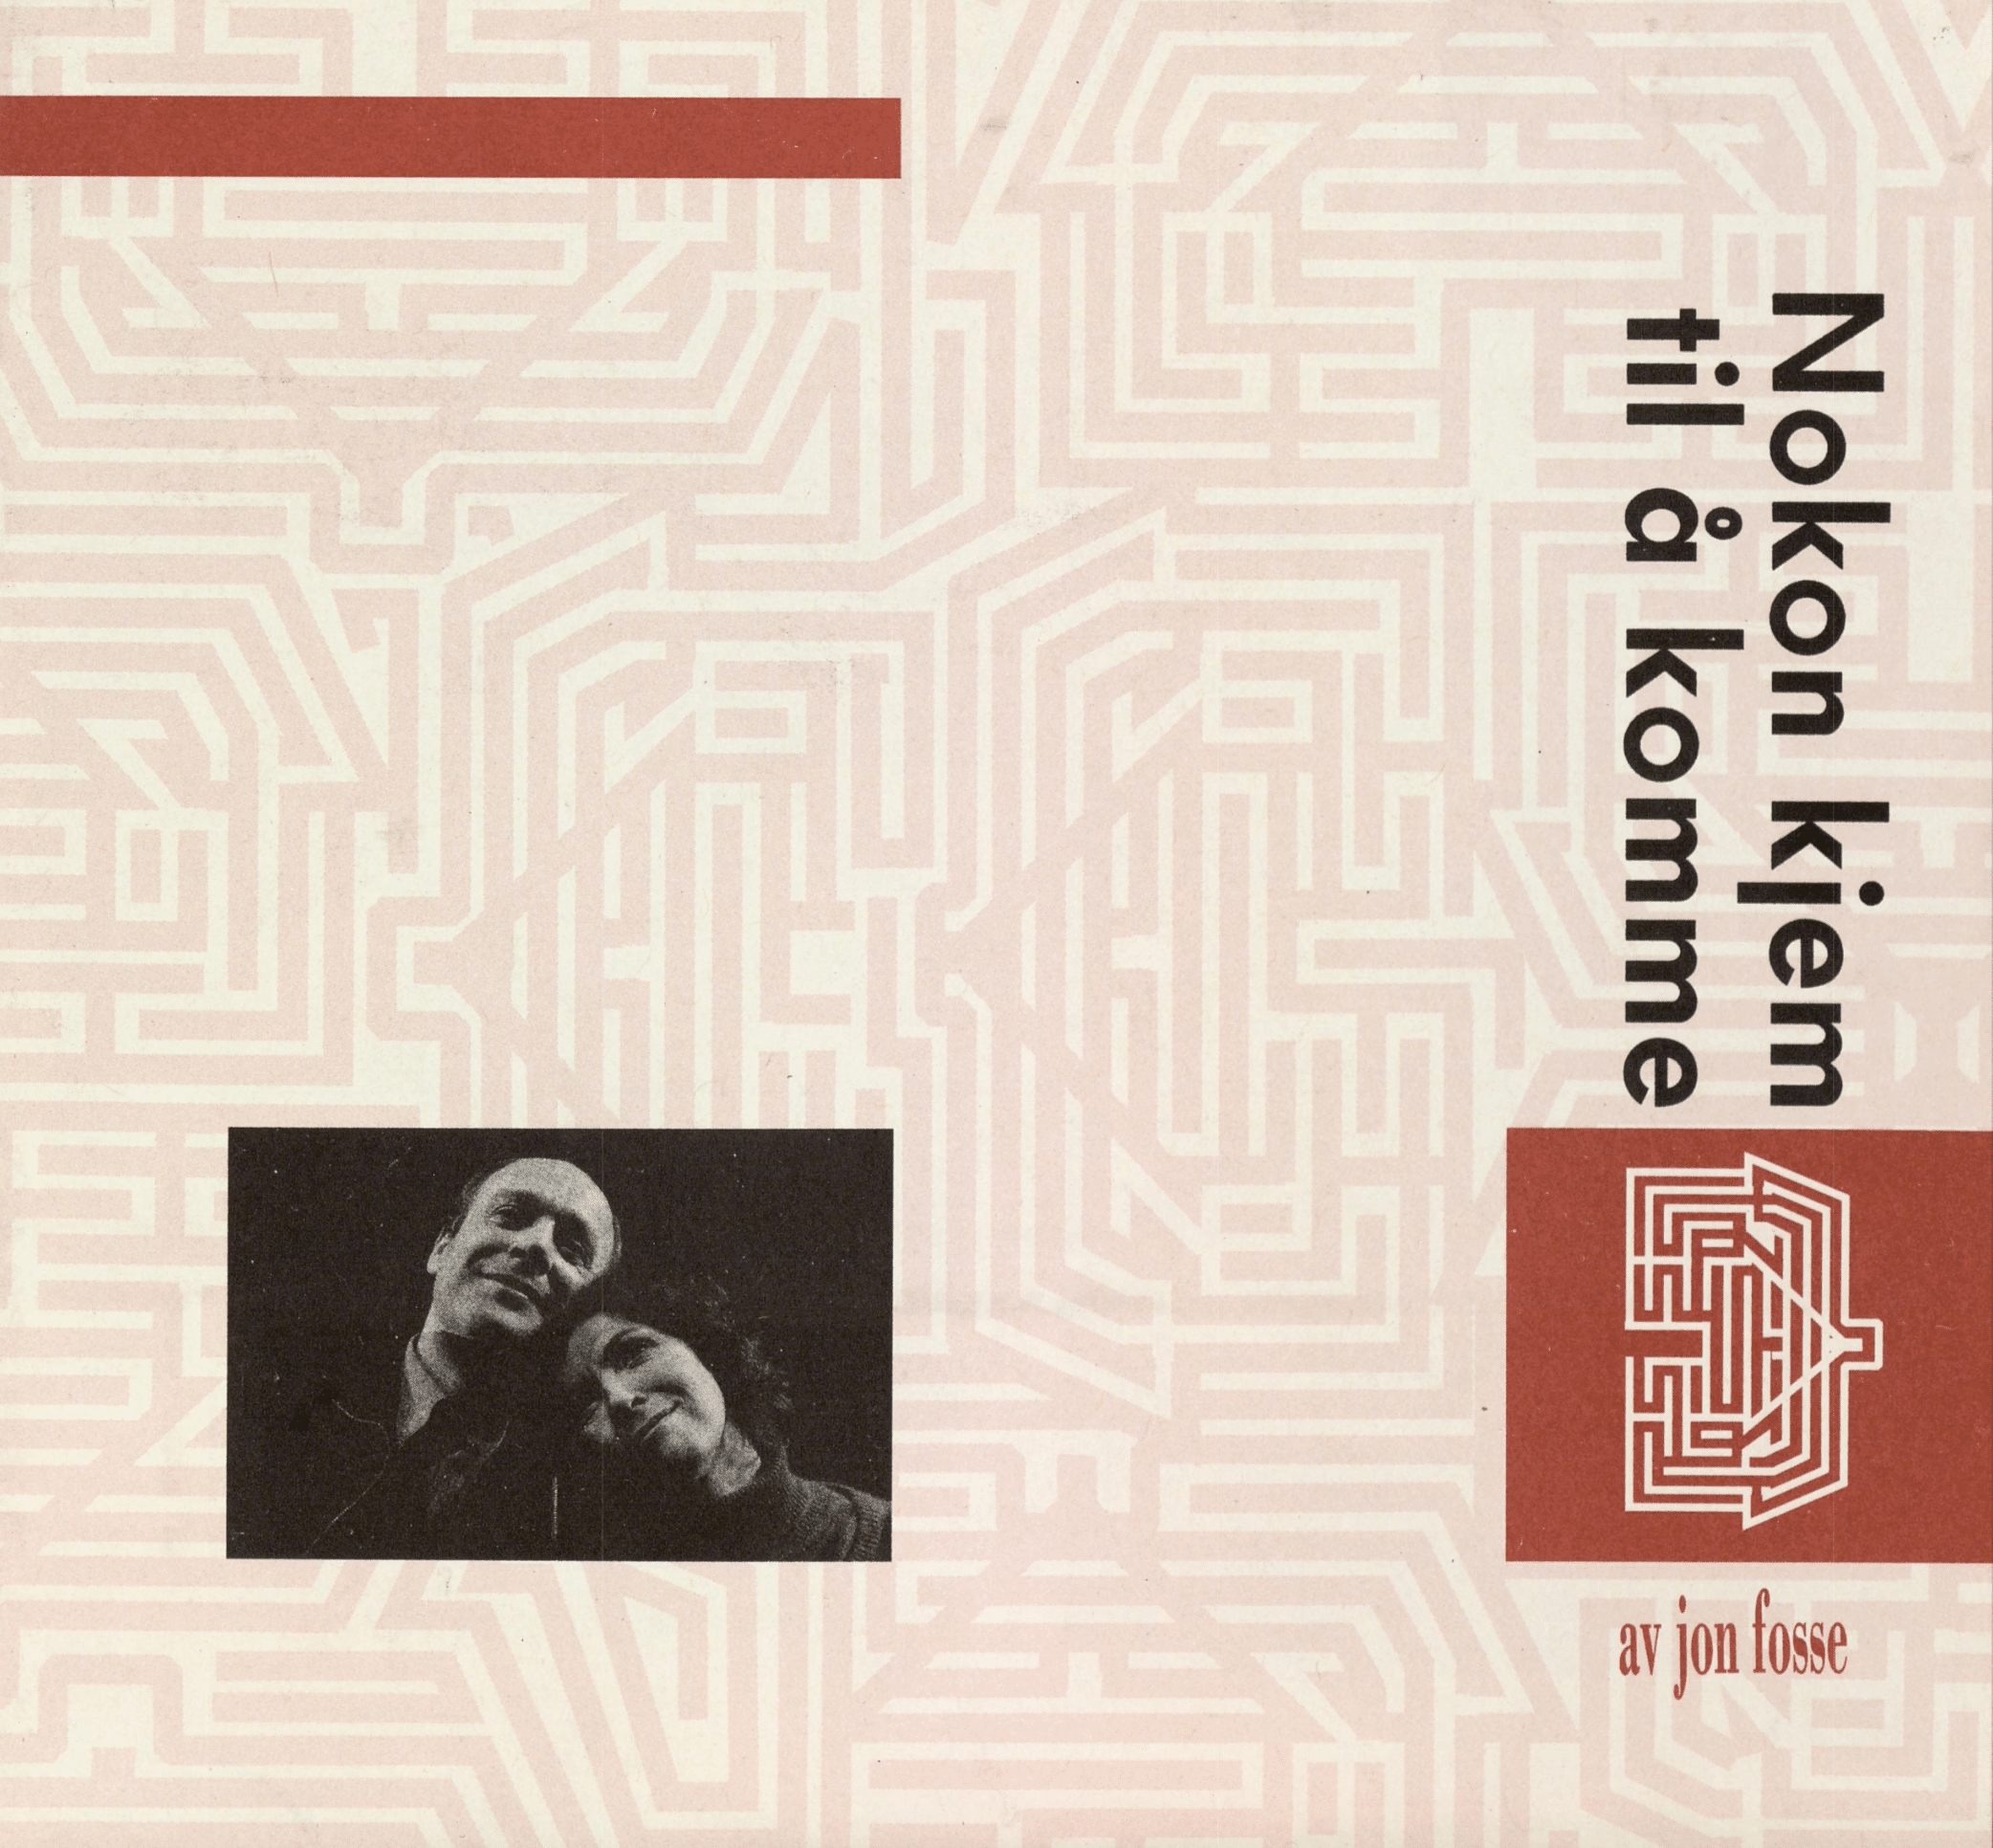 Omslaget til Nokon kjem til å komme av Jon Fosse. Bildet med labyrint i rødt og hvitt. Sort-hvitt-bilde av smilende par.